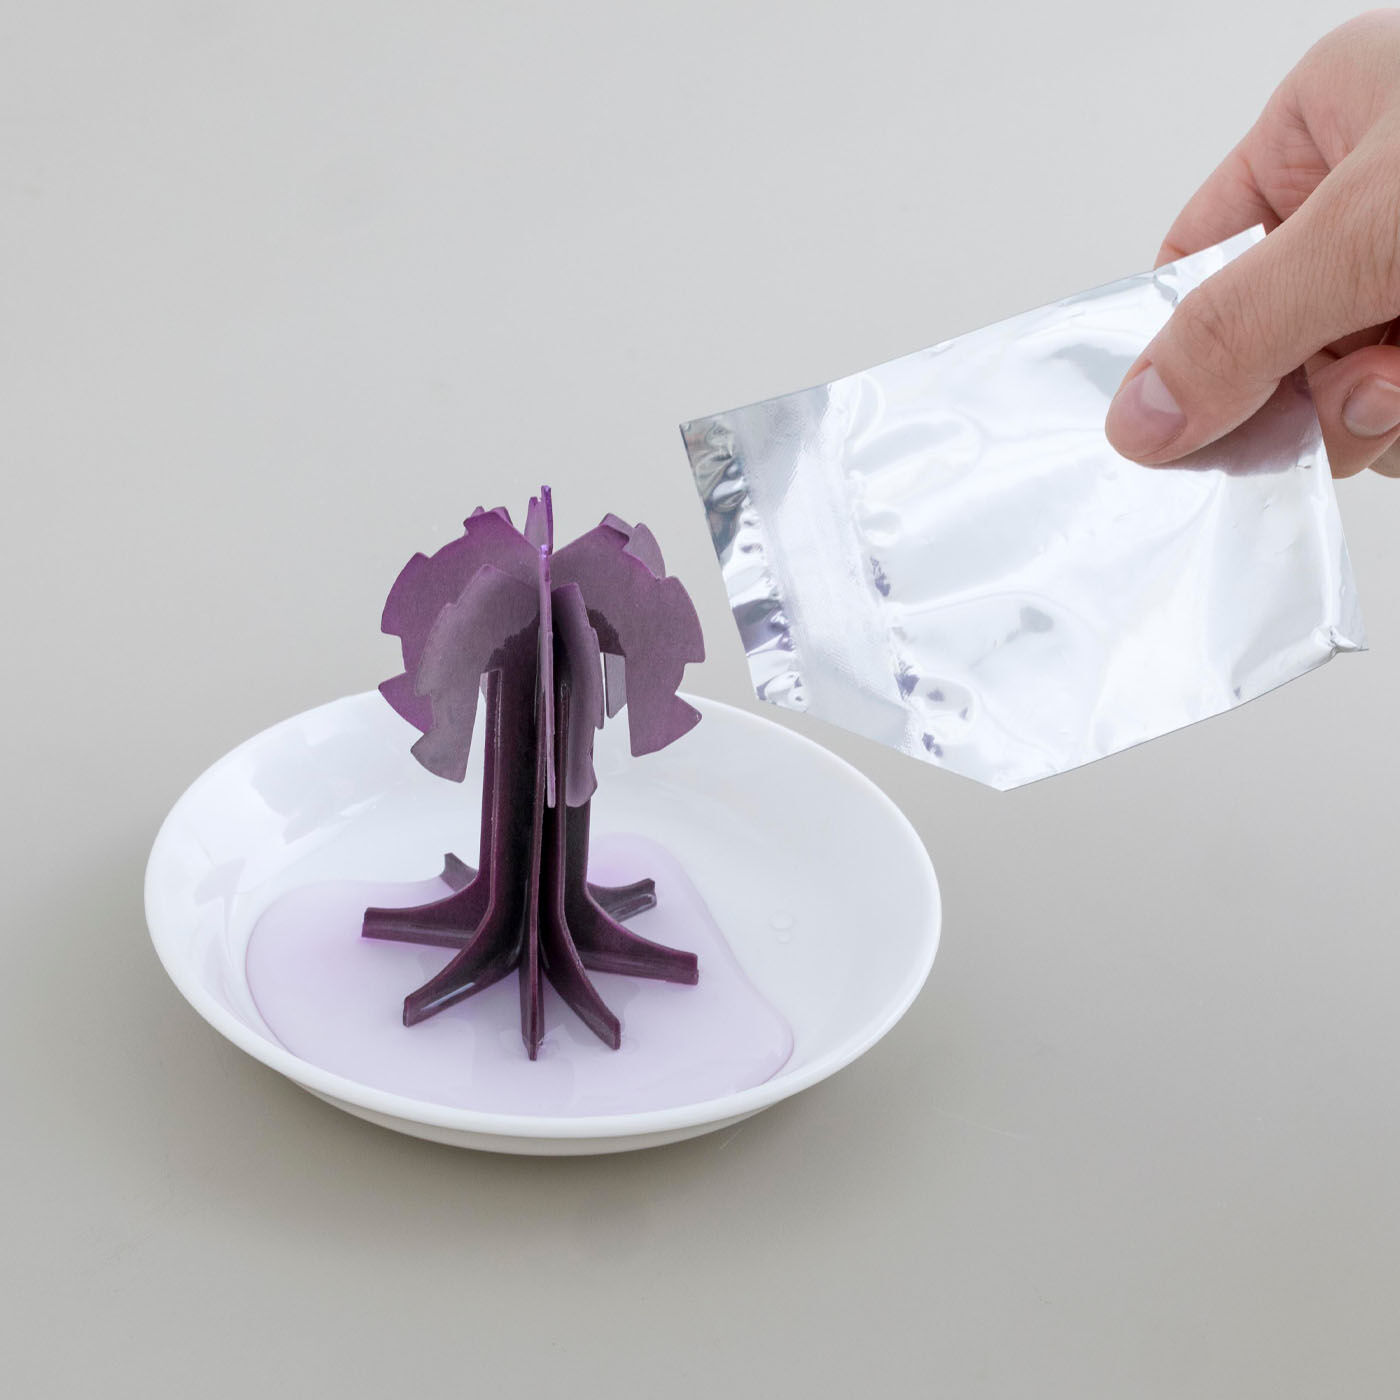 SeeMONO|デスクに咲く不思議なペーパーオブジェ〈桜〉|付属のお皿にモチーフを広げて立てて、液剤を垂らすだけ。